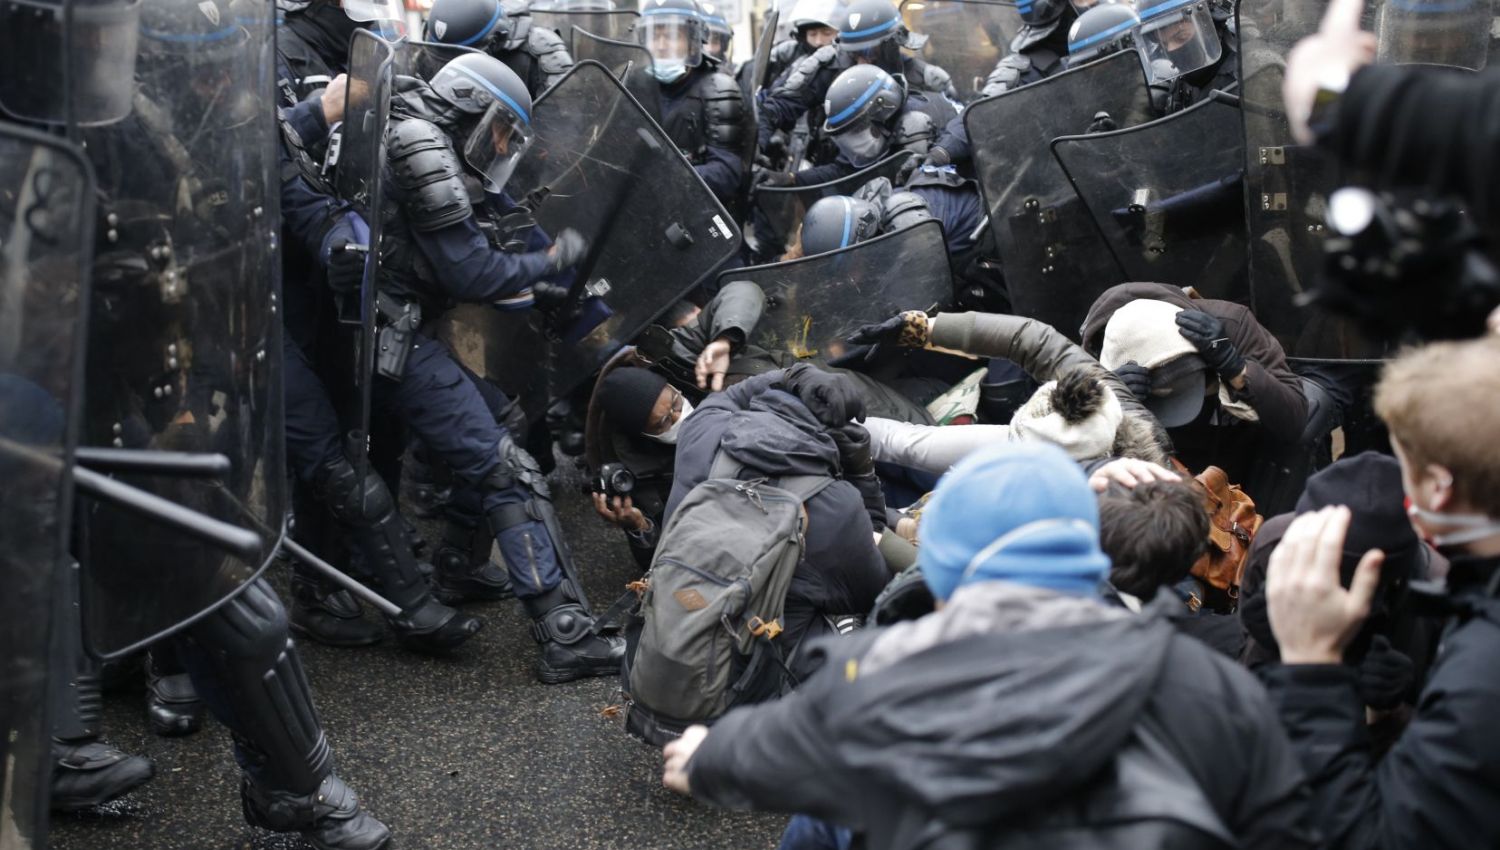 قمع التظاهرات في فرنسا: تحقيقاتٌ في اعتقالات غير قانونية